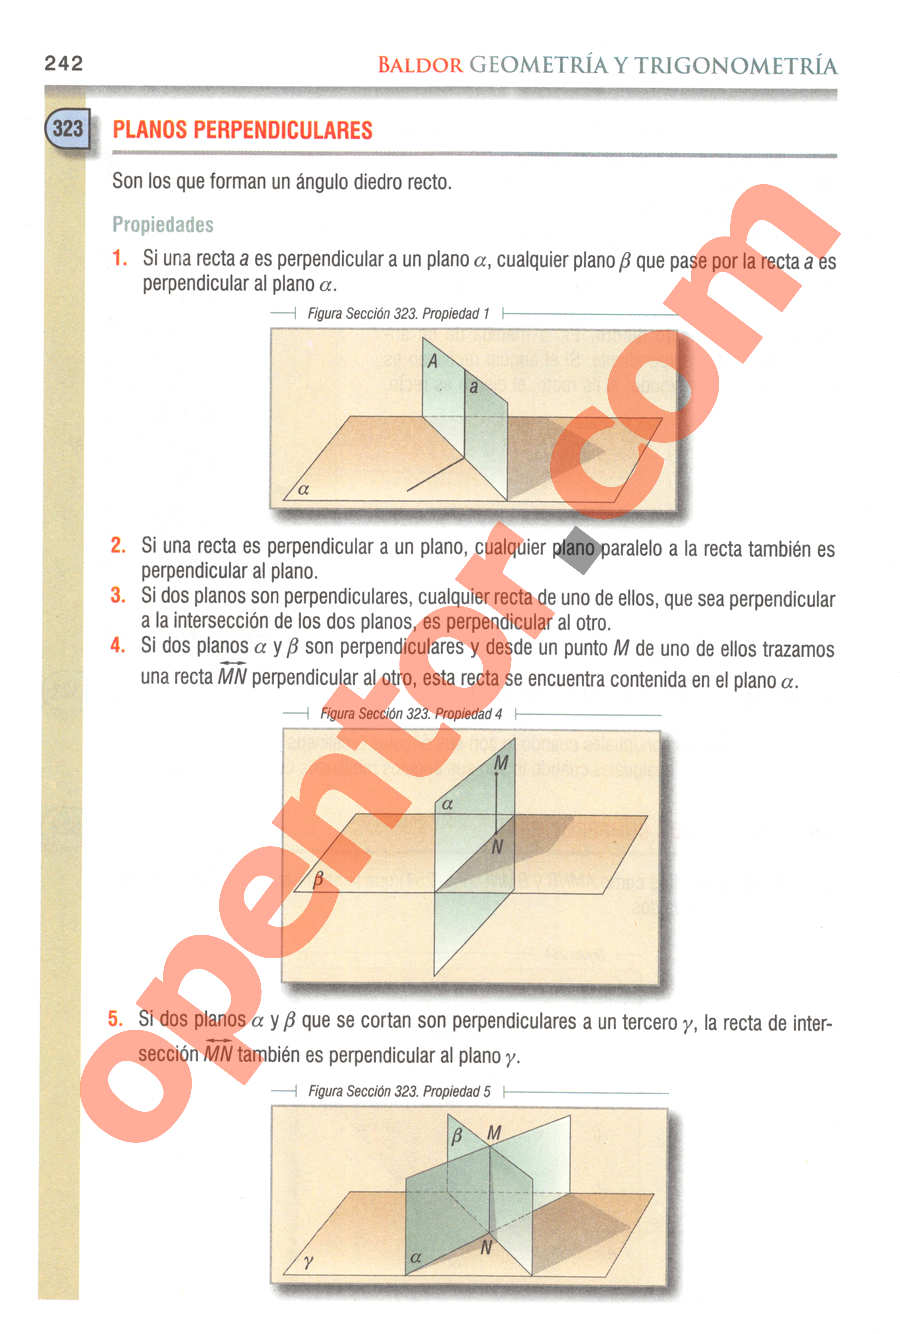 Geometría y Trigonometría de Baldor - Página 242